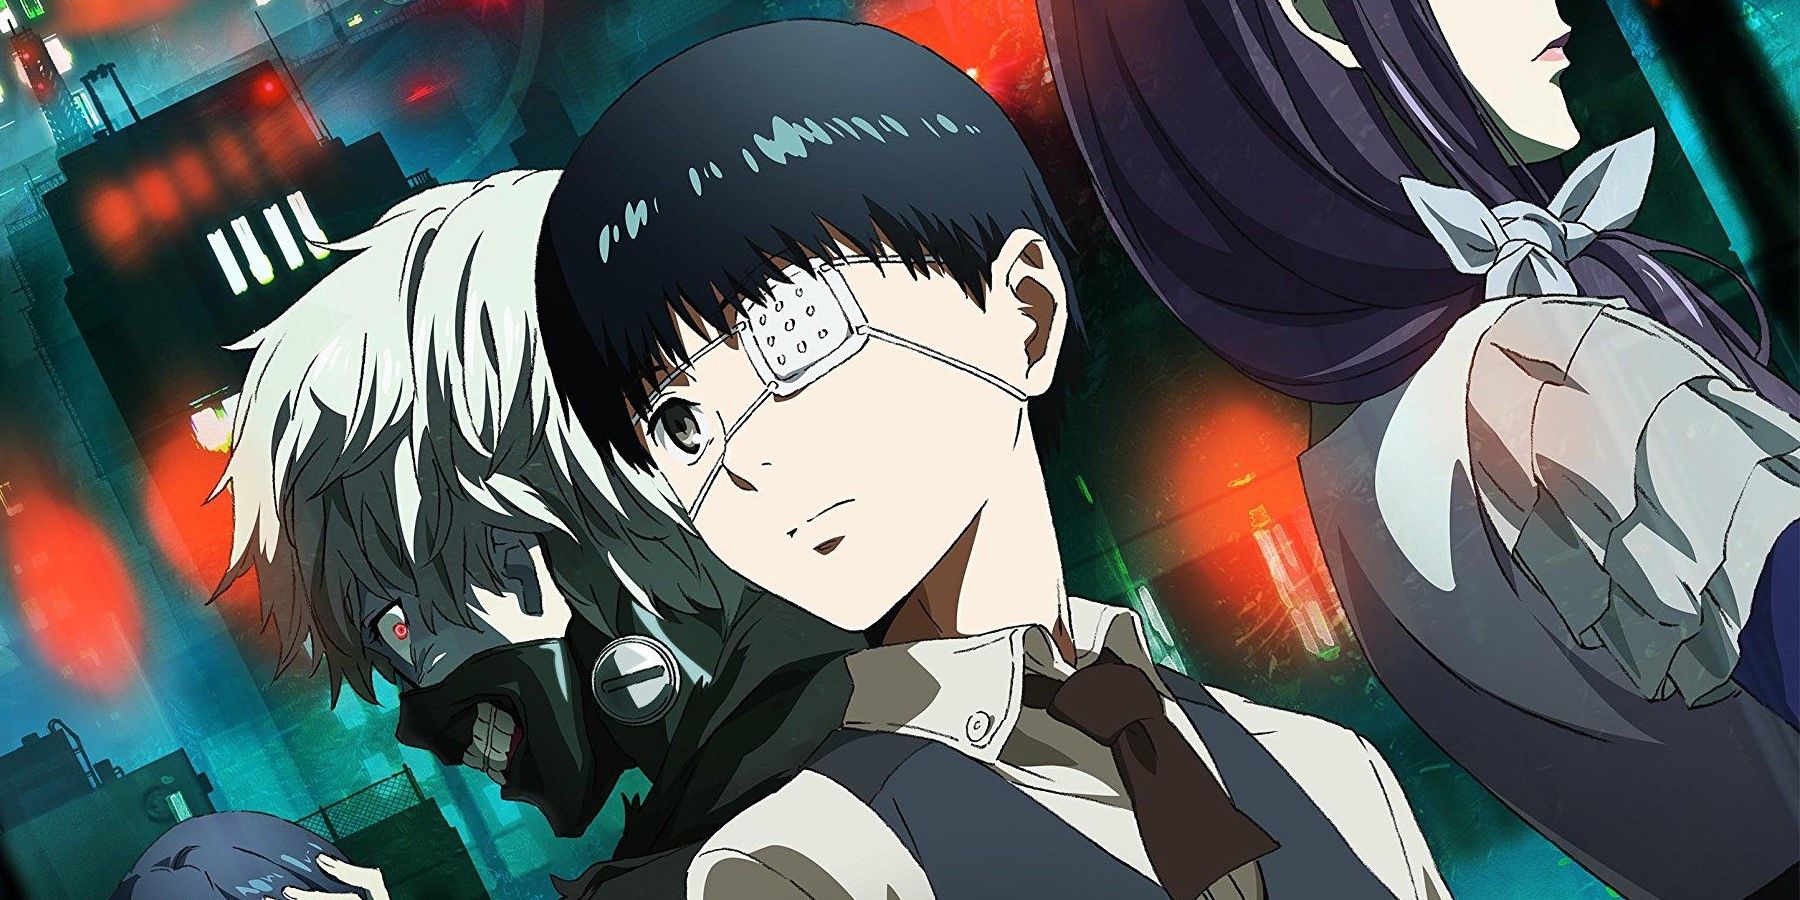 Is Kaneki weak in the anime Tokyo Ghoul? - Quora